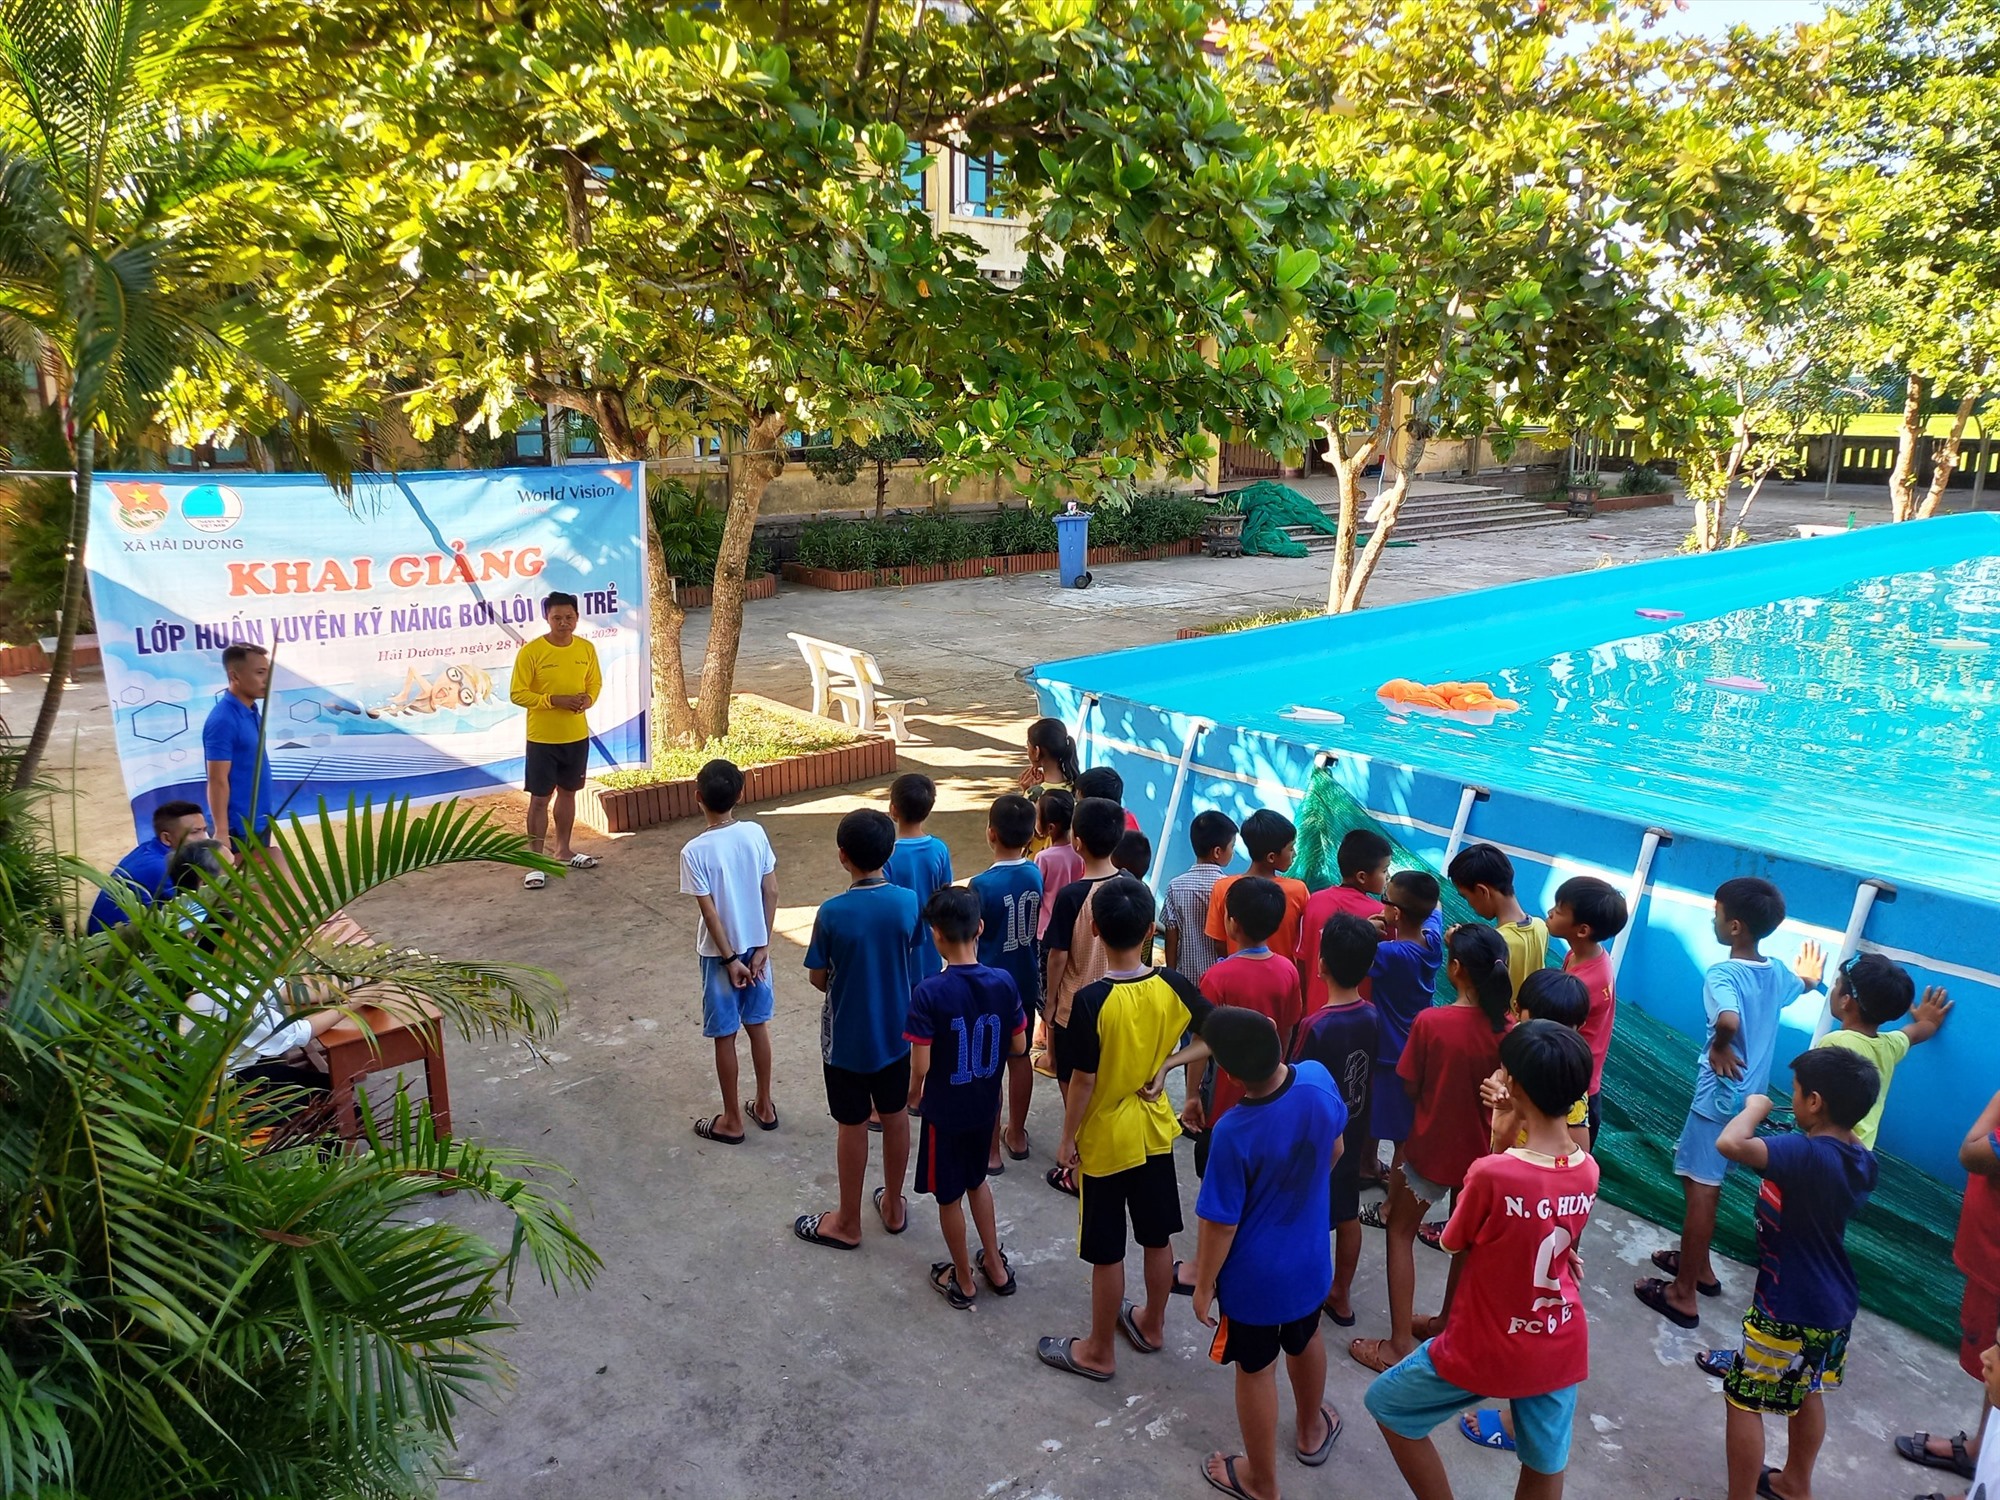 Xã đoàn Hải Dương tổ chức khai giảng khóa huấn luyện kỹ năng bơi lội miễn phí cho trẻ trong dịp hè 2022 - Ảnh: Đ.V